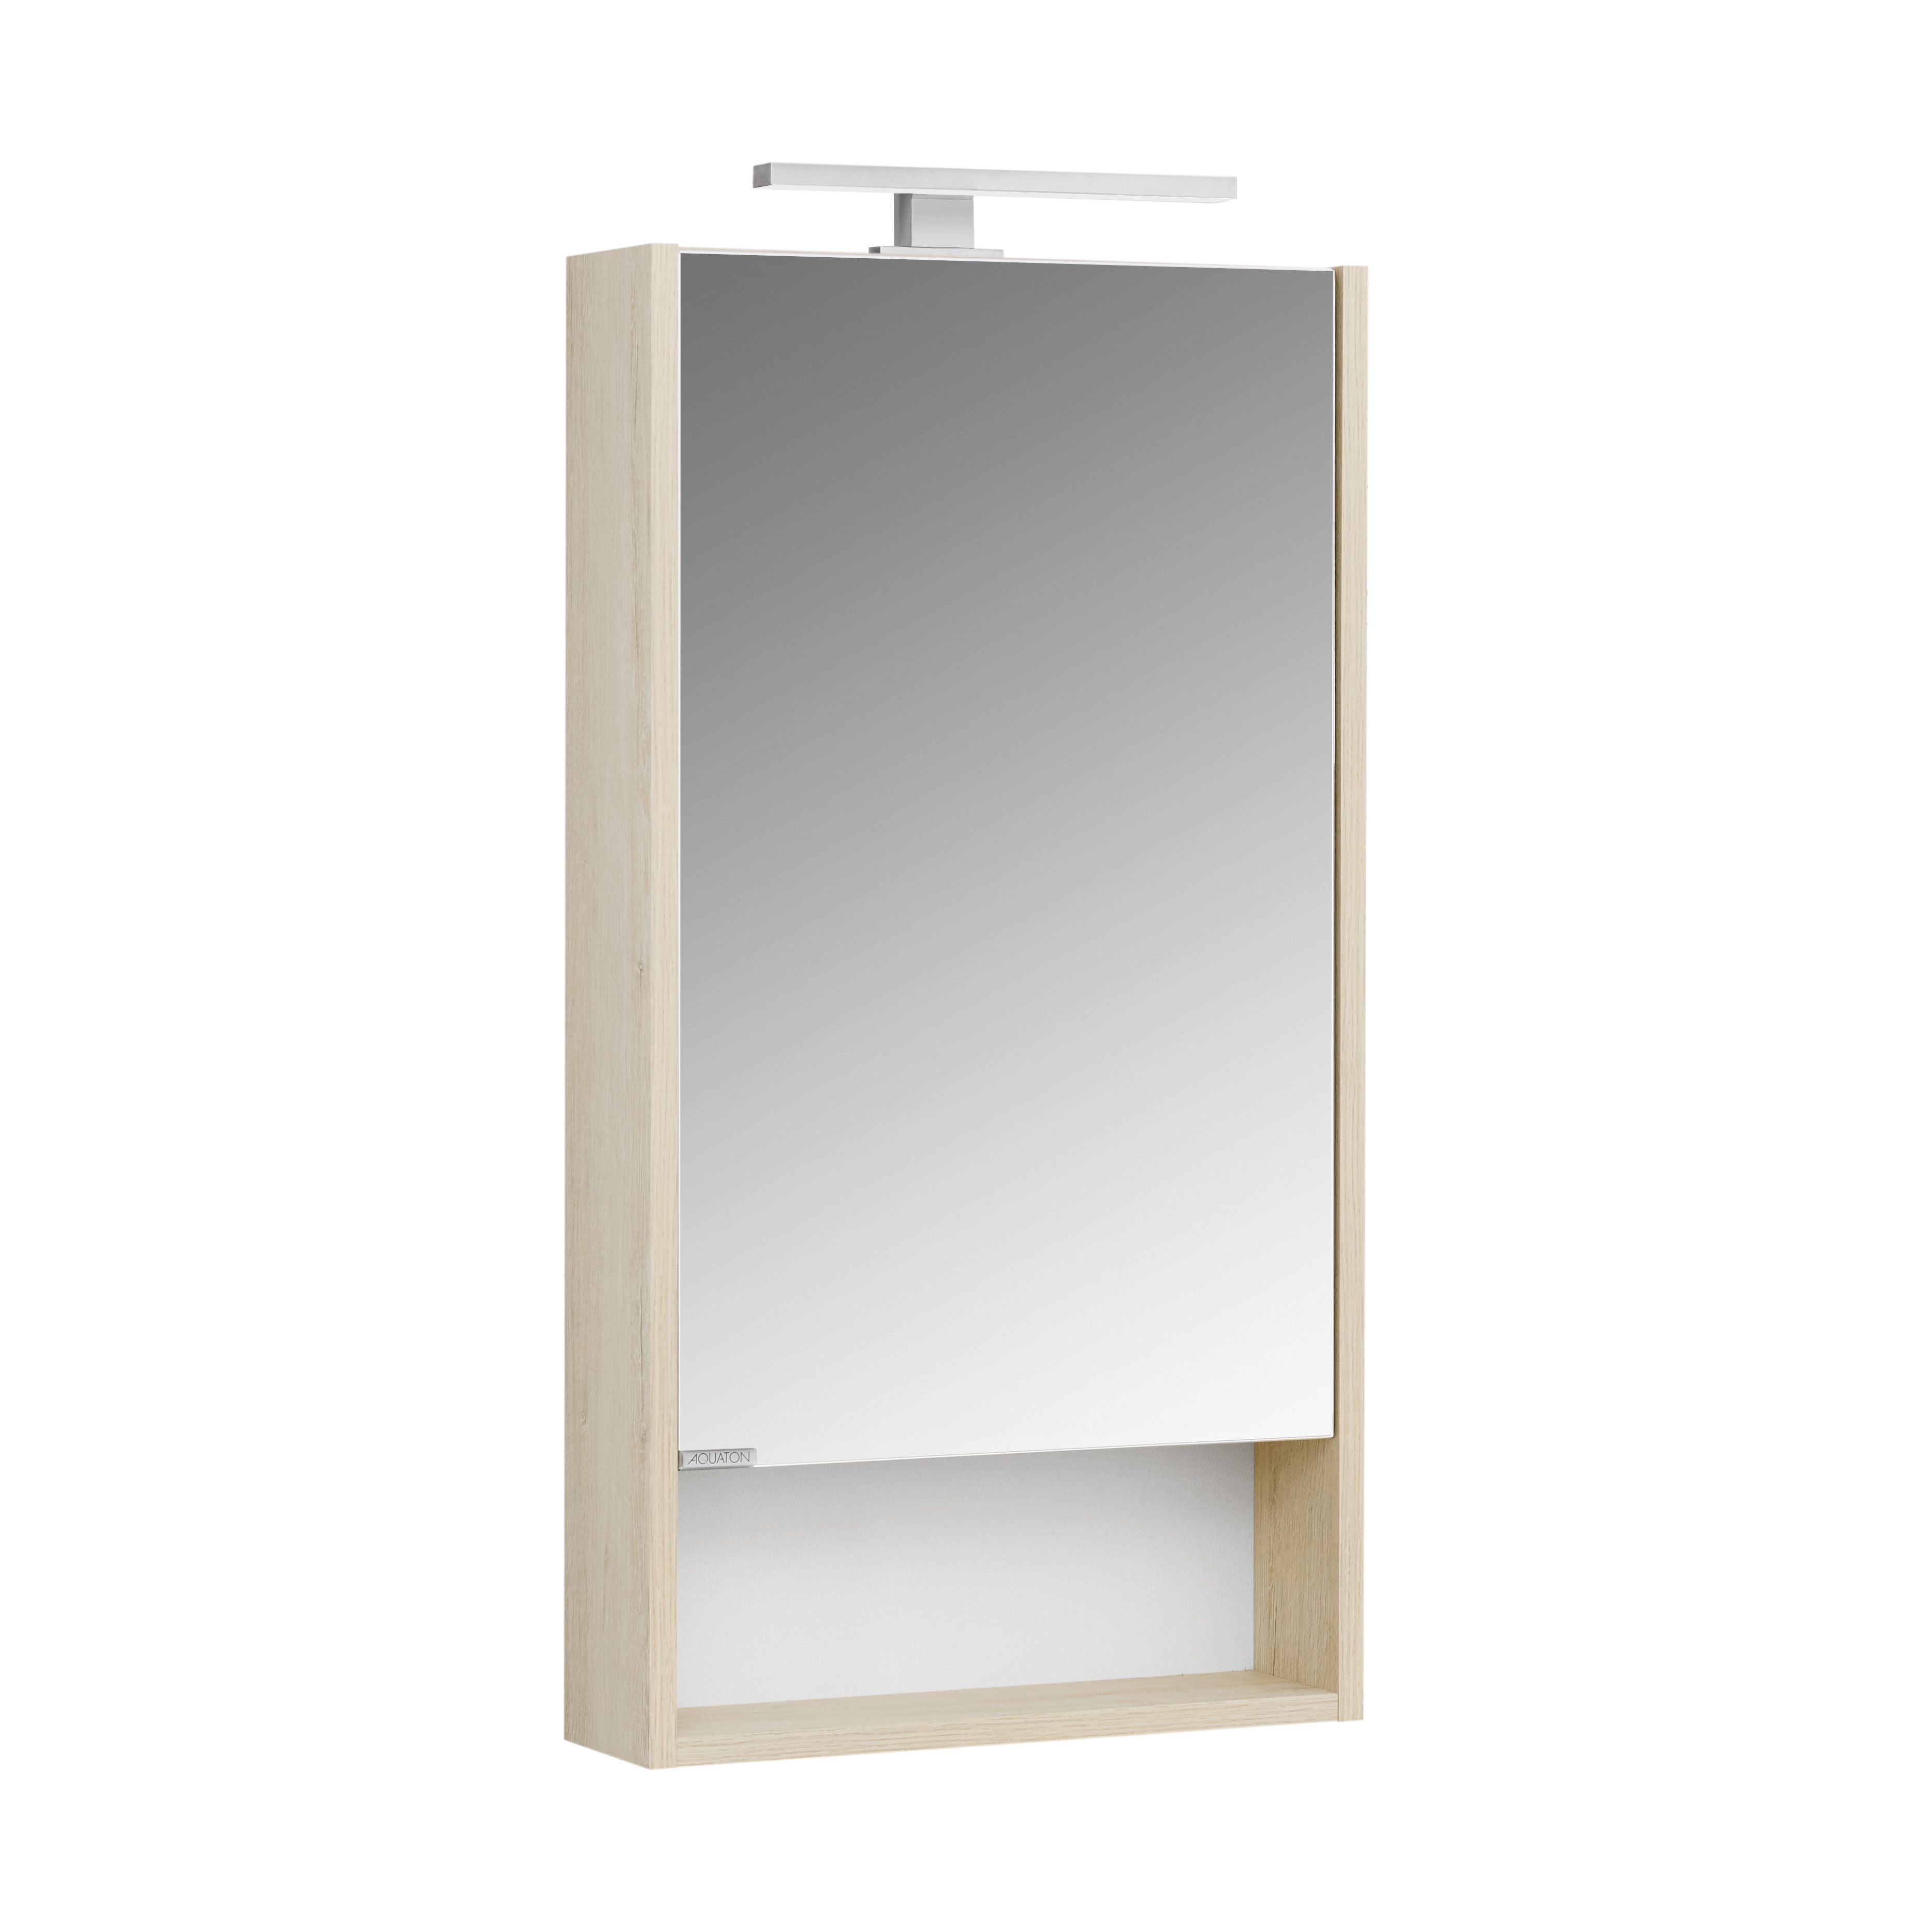 Зеркальный шкаф Акватон Сканди 1A252002SDB20 45 см, белый, цвет дуб - фото 3